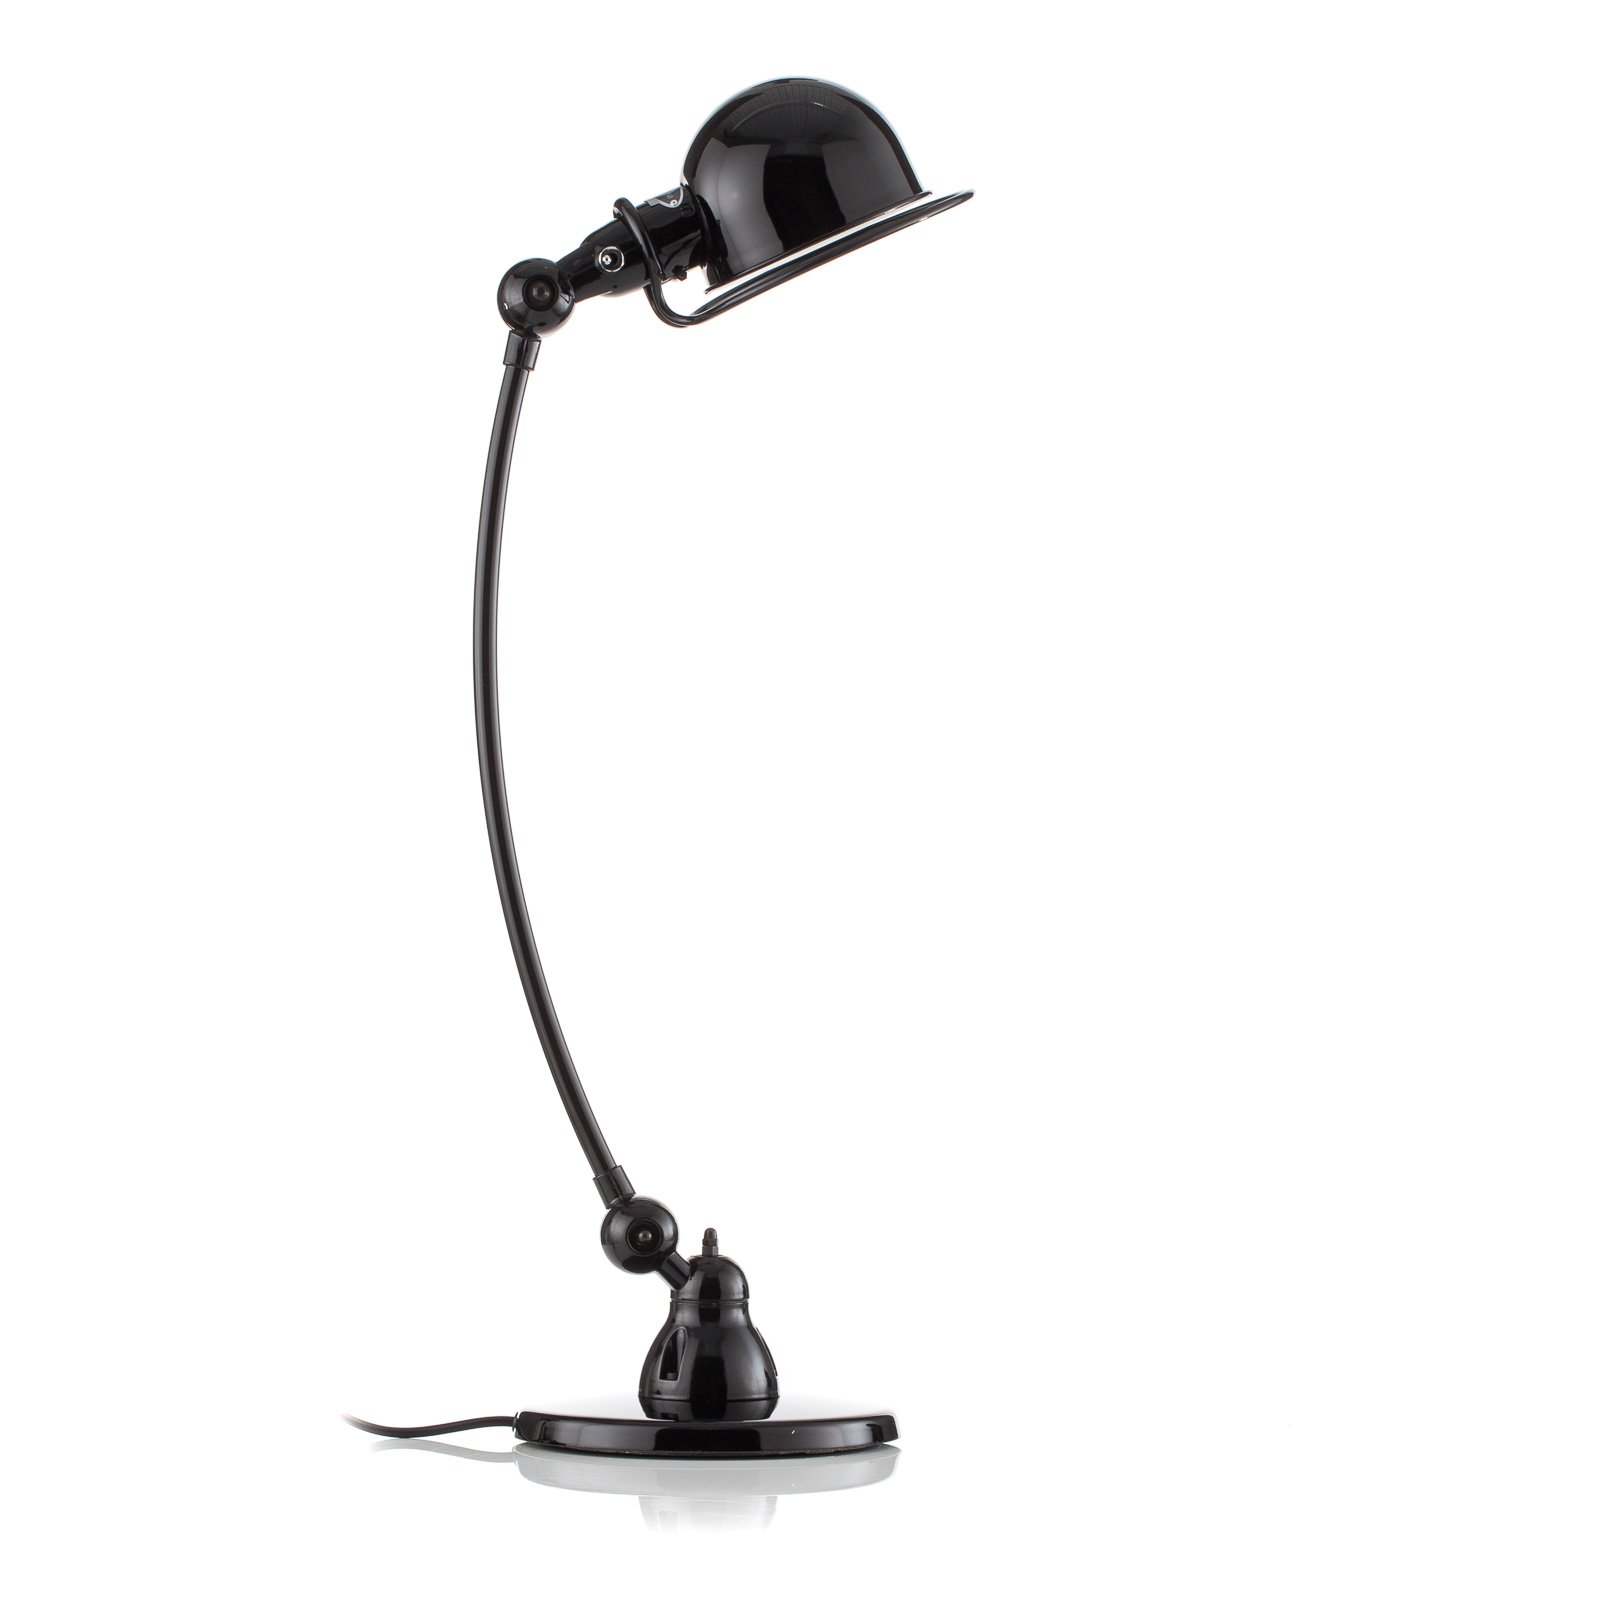 Jieldé Loft C6000 stolná lampa, zakrivená, čierna